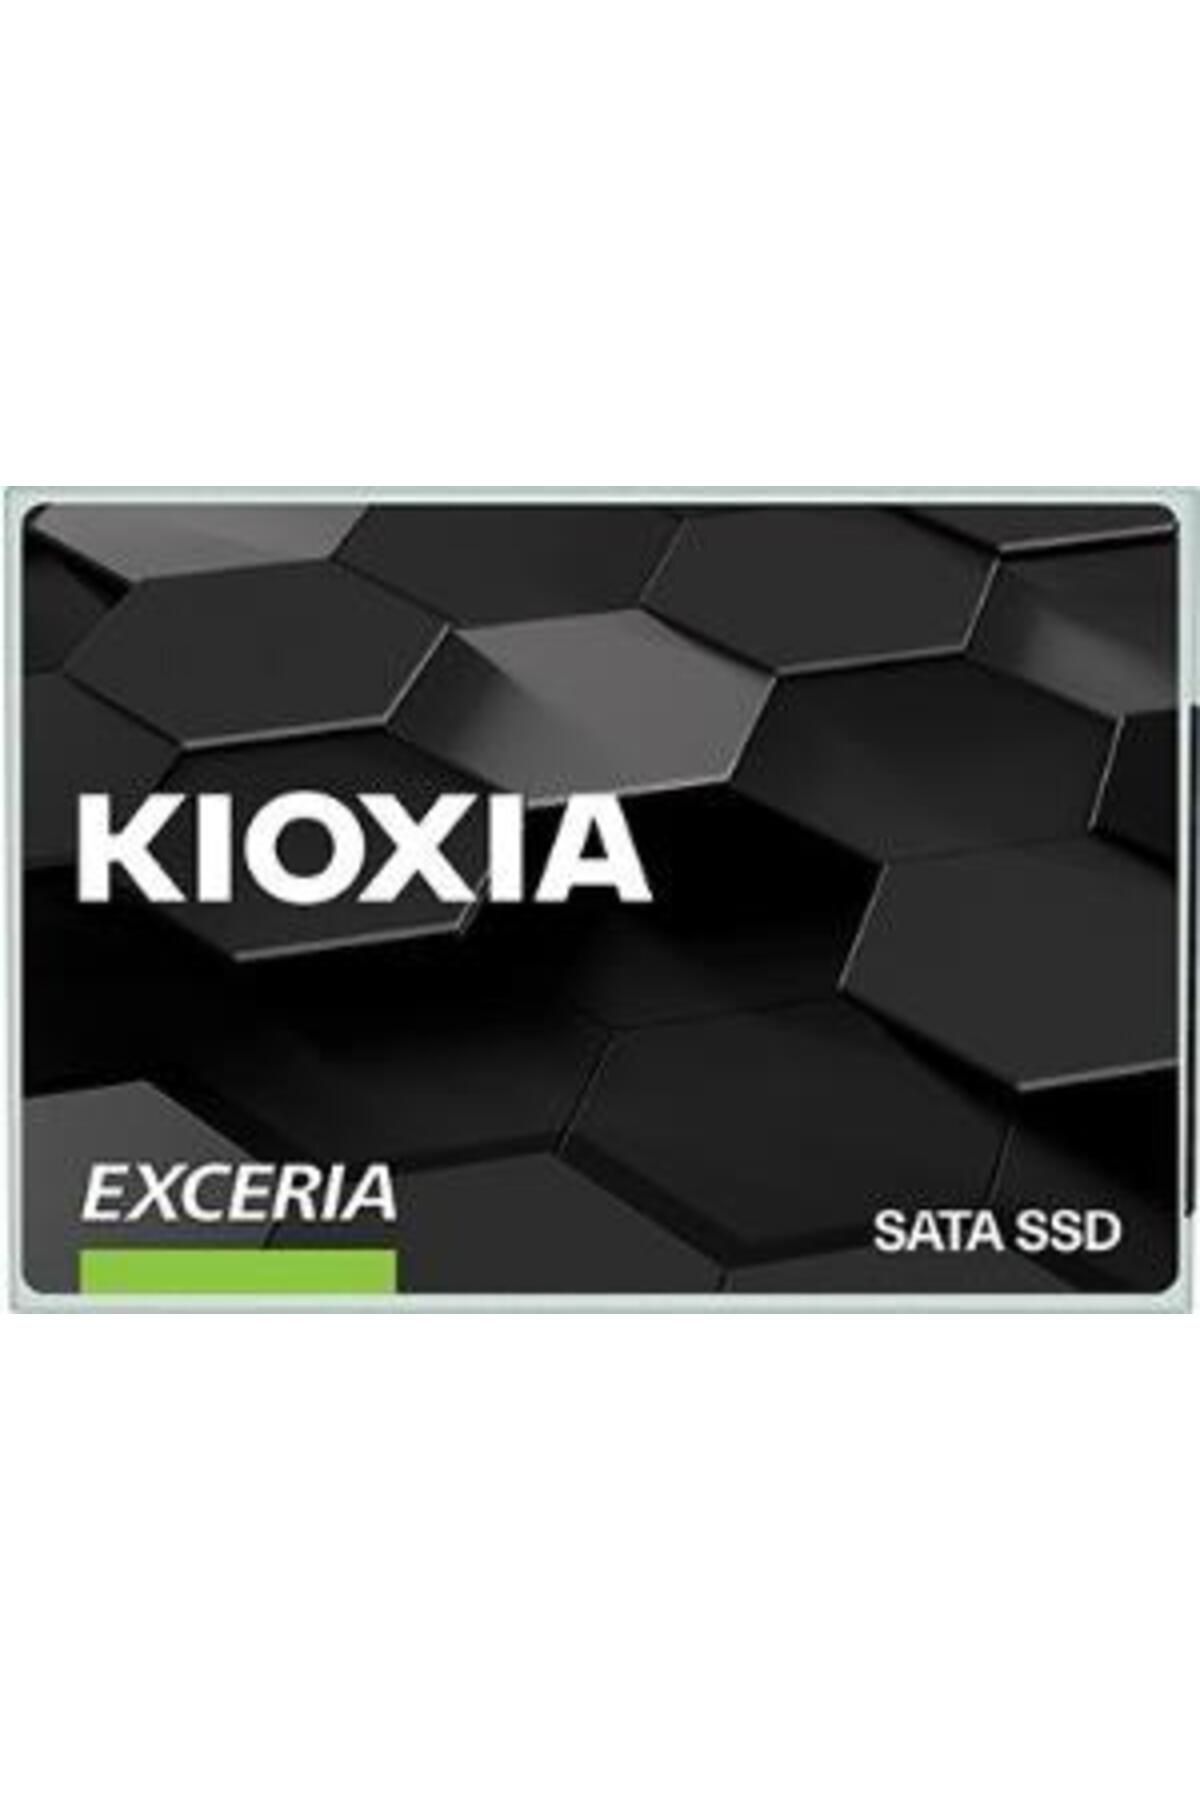 Kioxia 960gb Ssd 555/540mb Ltc10z960gg8